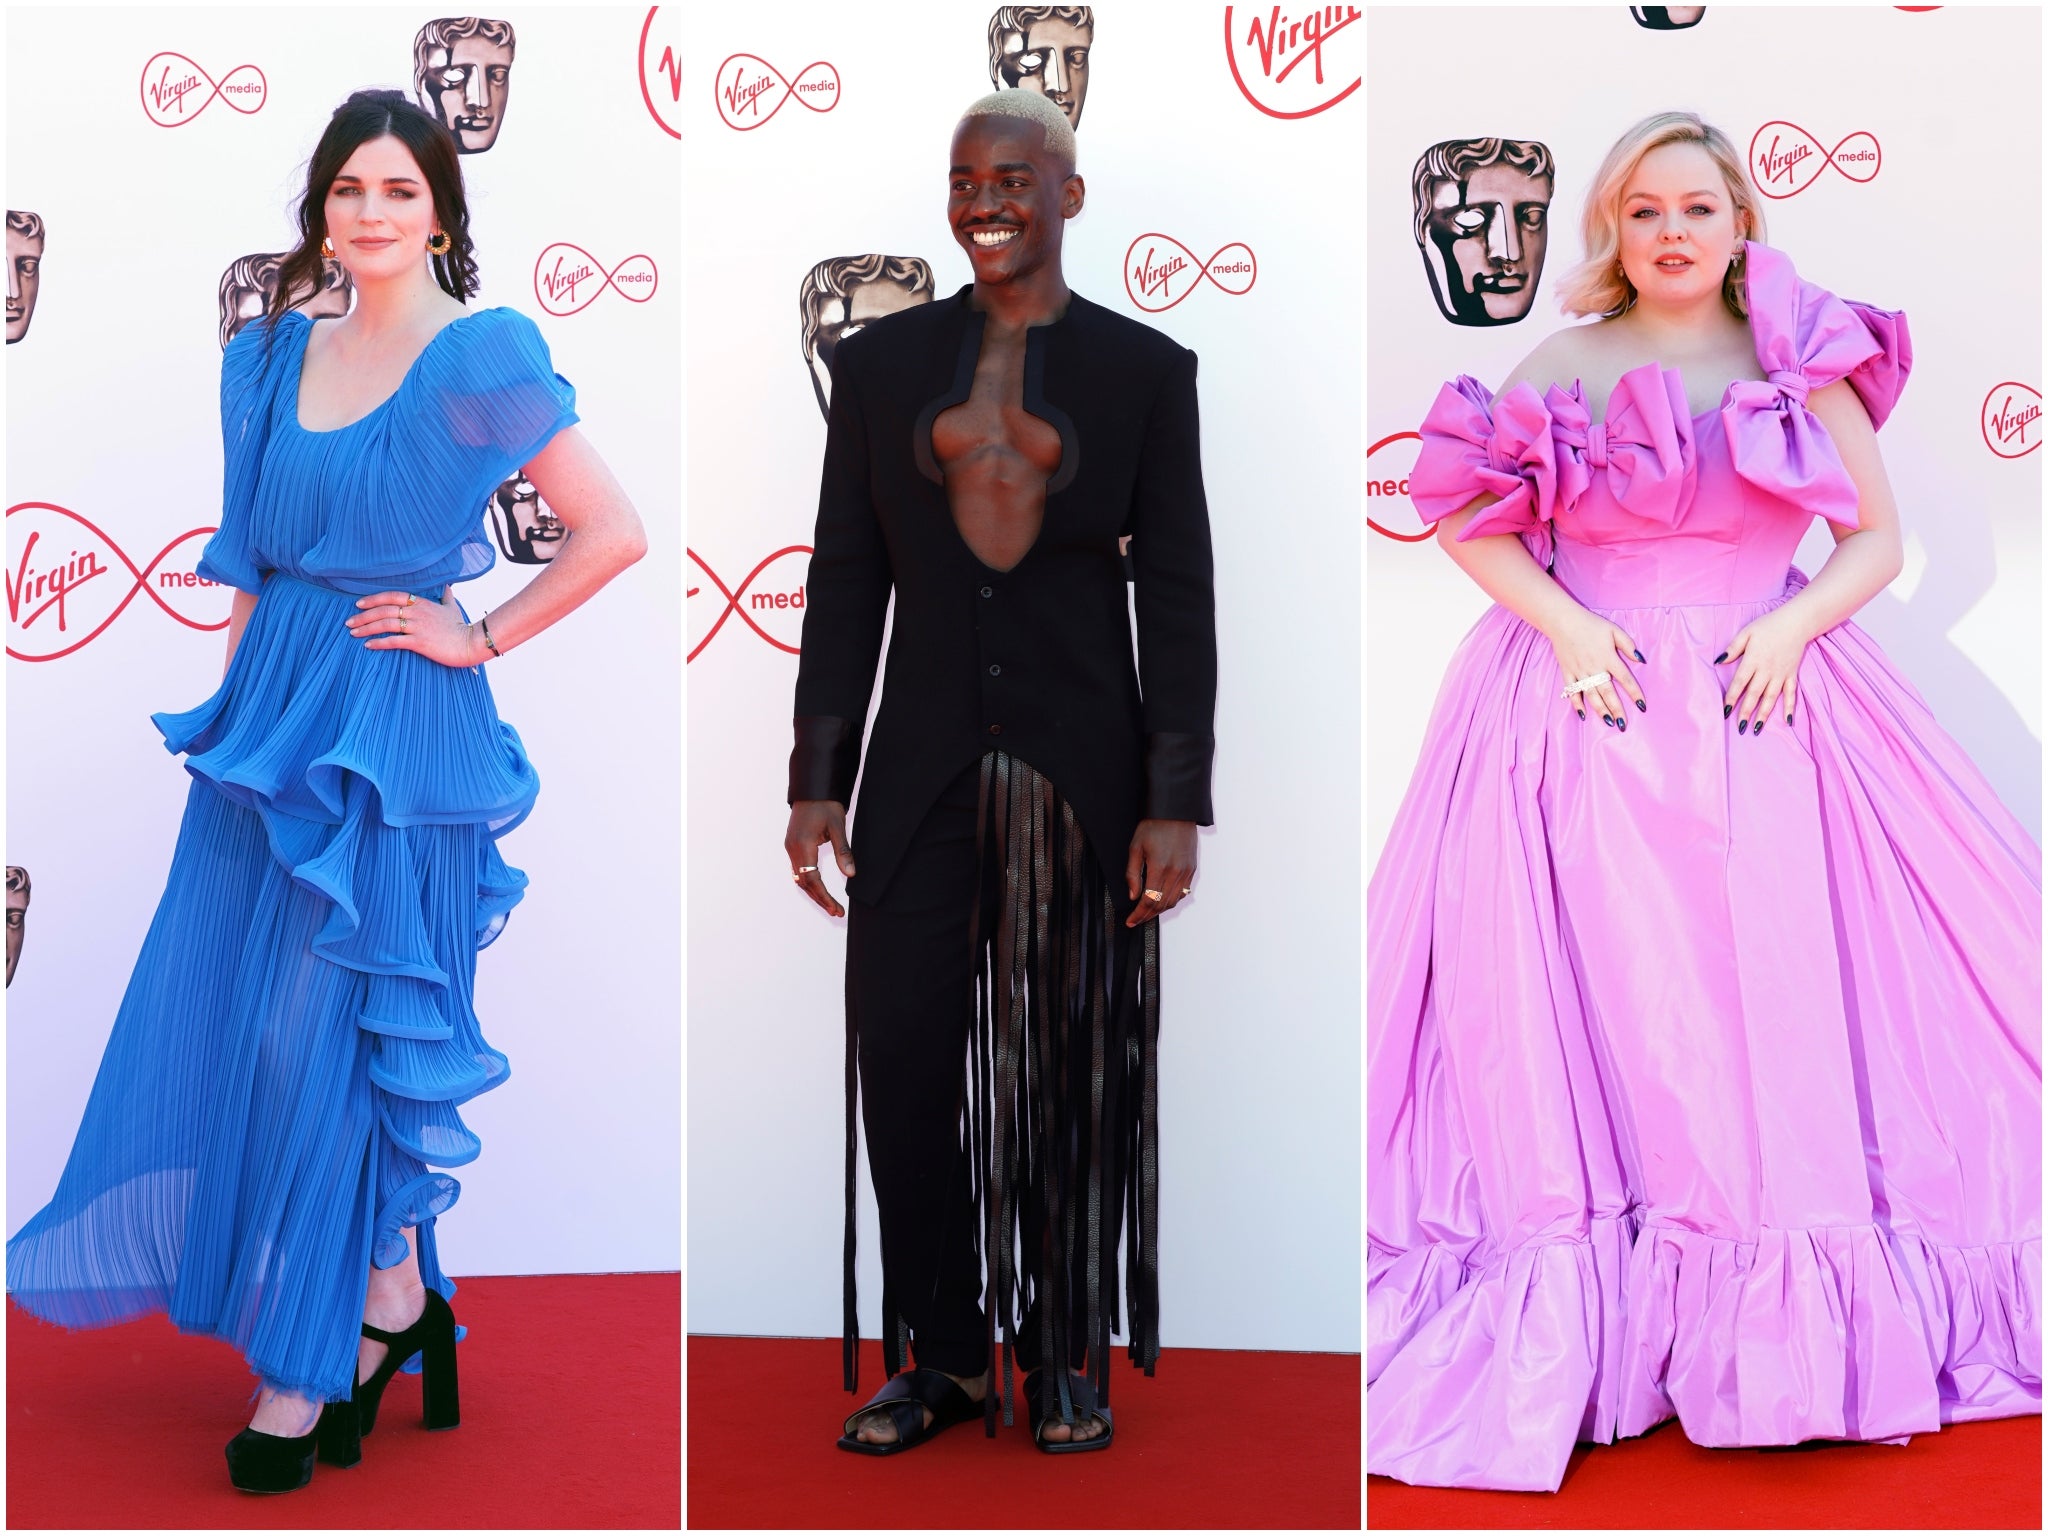 BAFTA Awards 2022: All the Celebrity Red-Carpet Looks